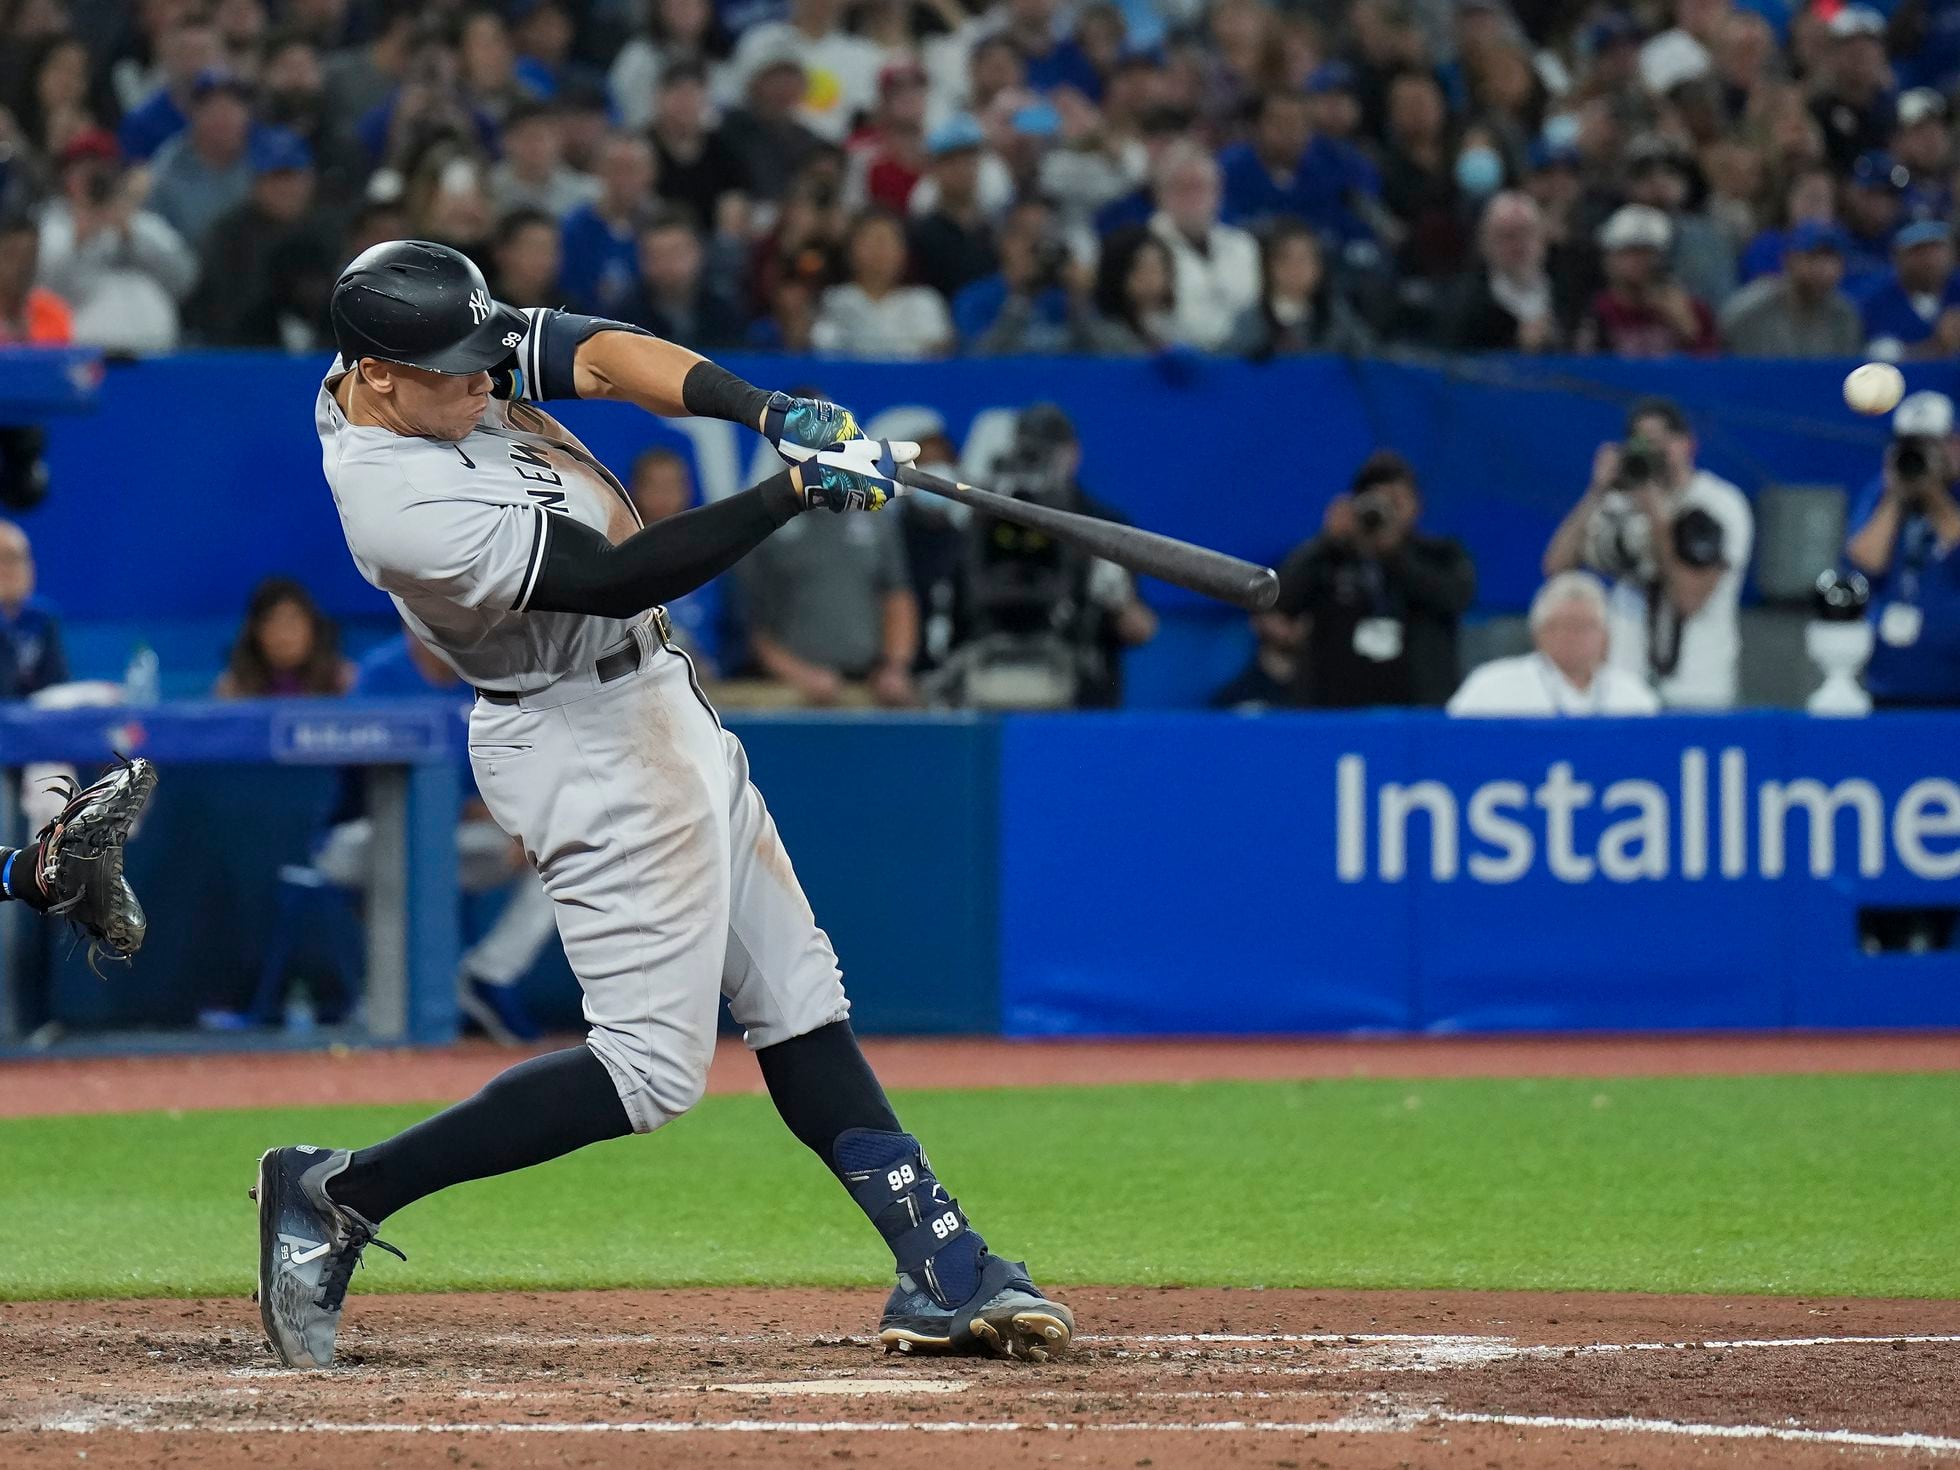 Aaron Judge hace historia en el cierre de una poderosa temporada de béisbol  | Deportes | EL PAÍS